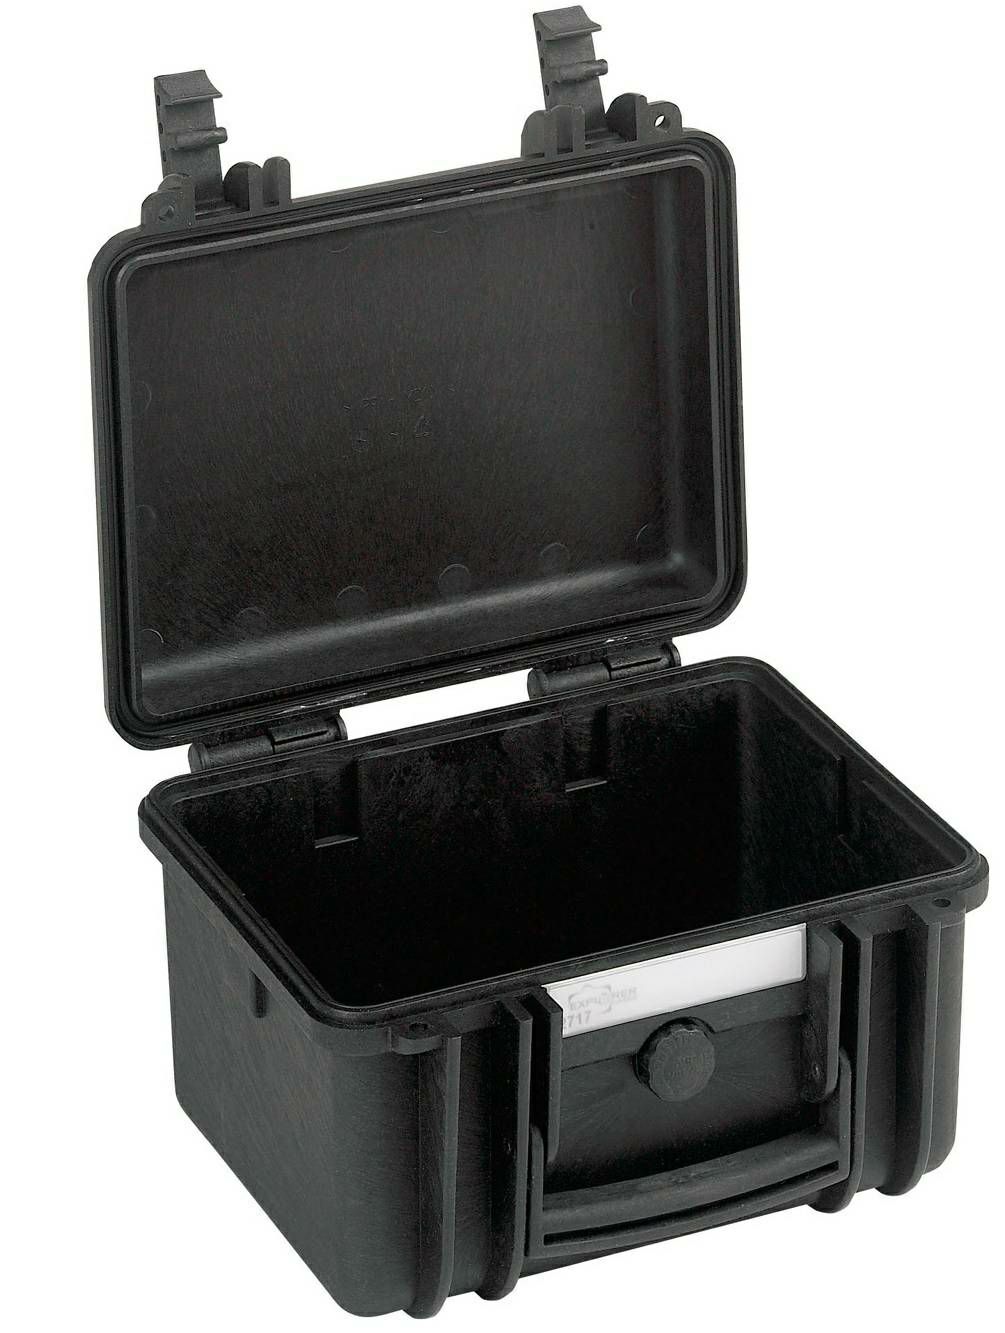 Explorer Cases 2717 Black Foam 305x270x194mm kufer za foto opremu kofer Camera Case